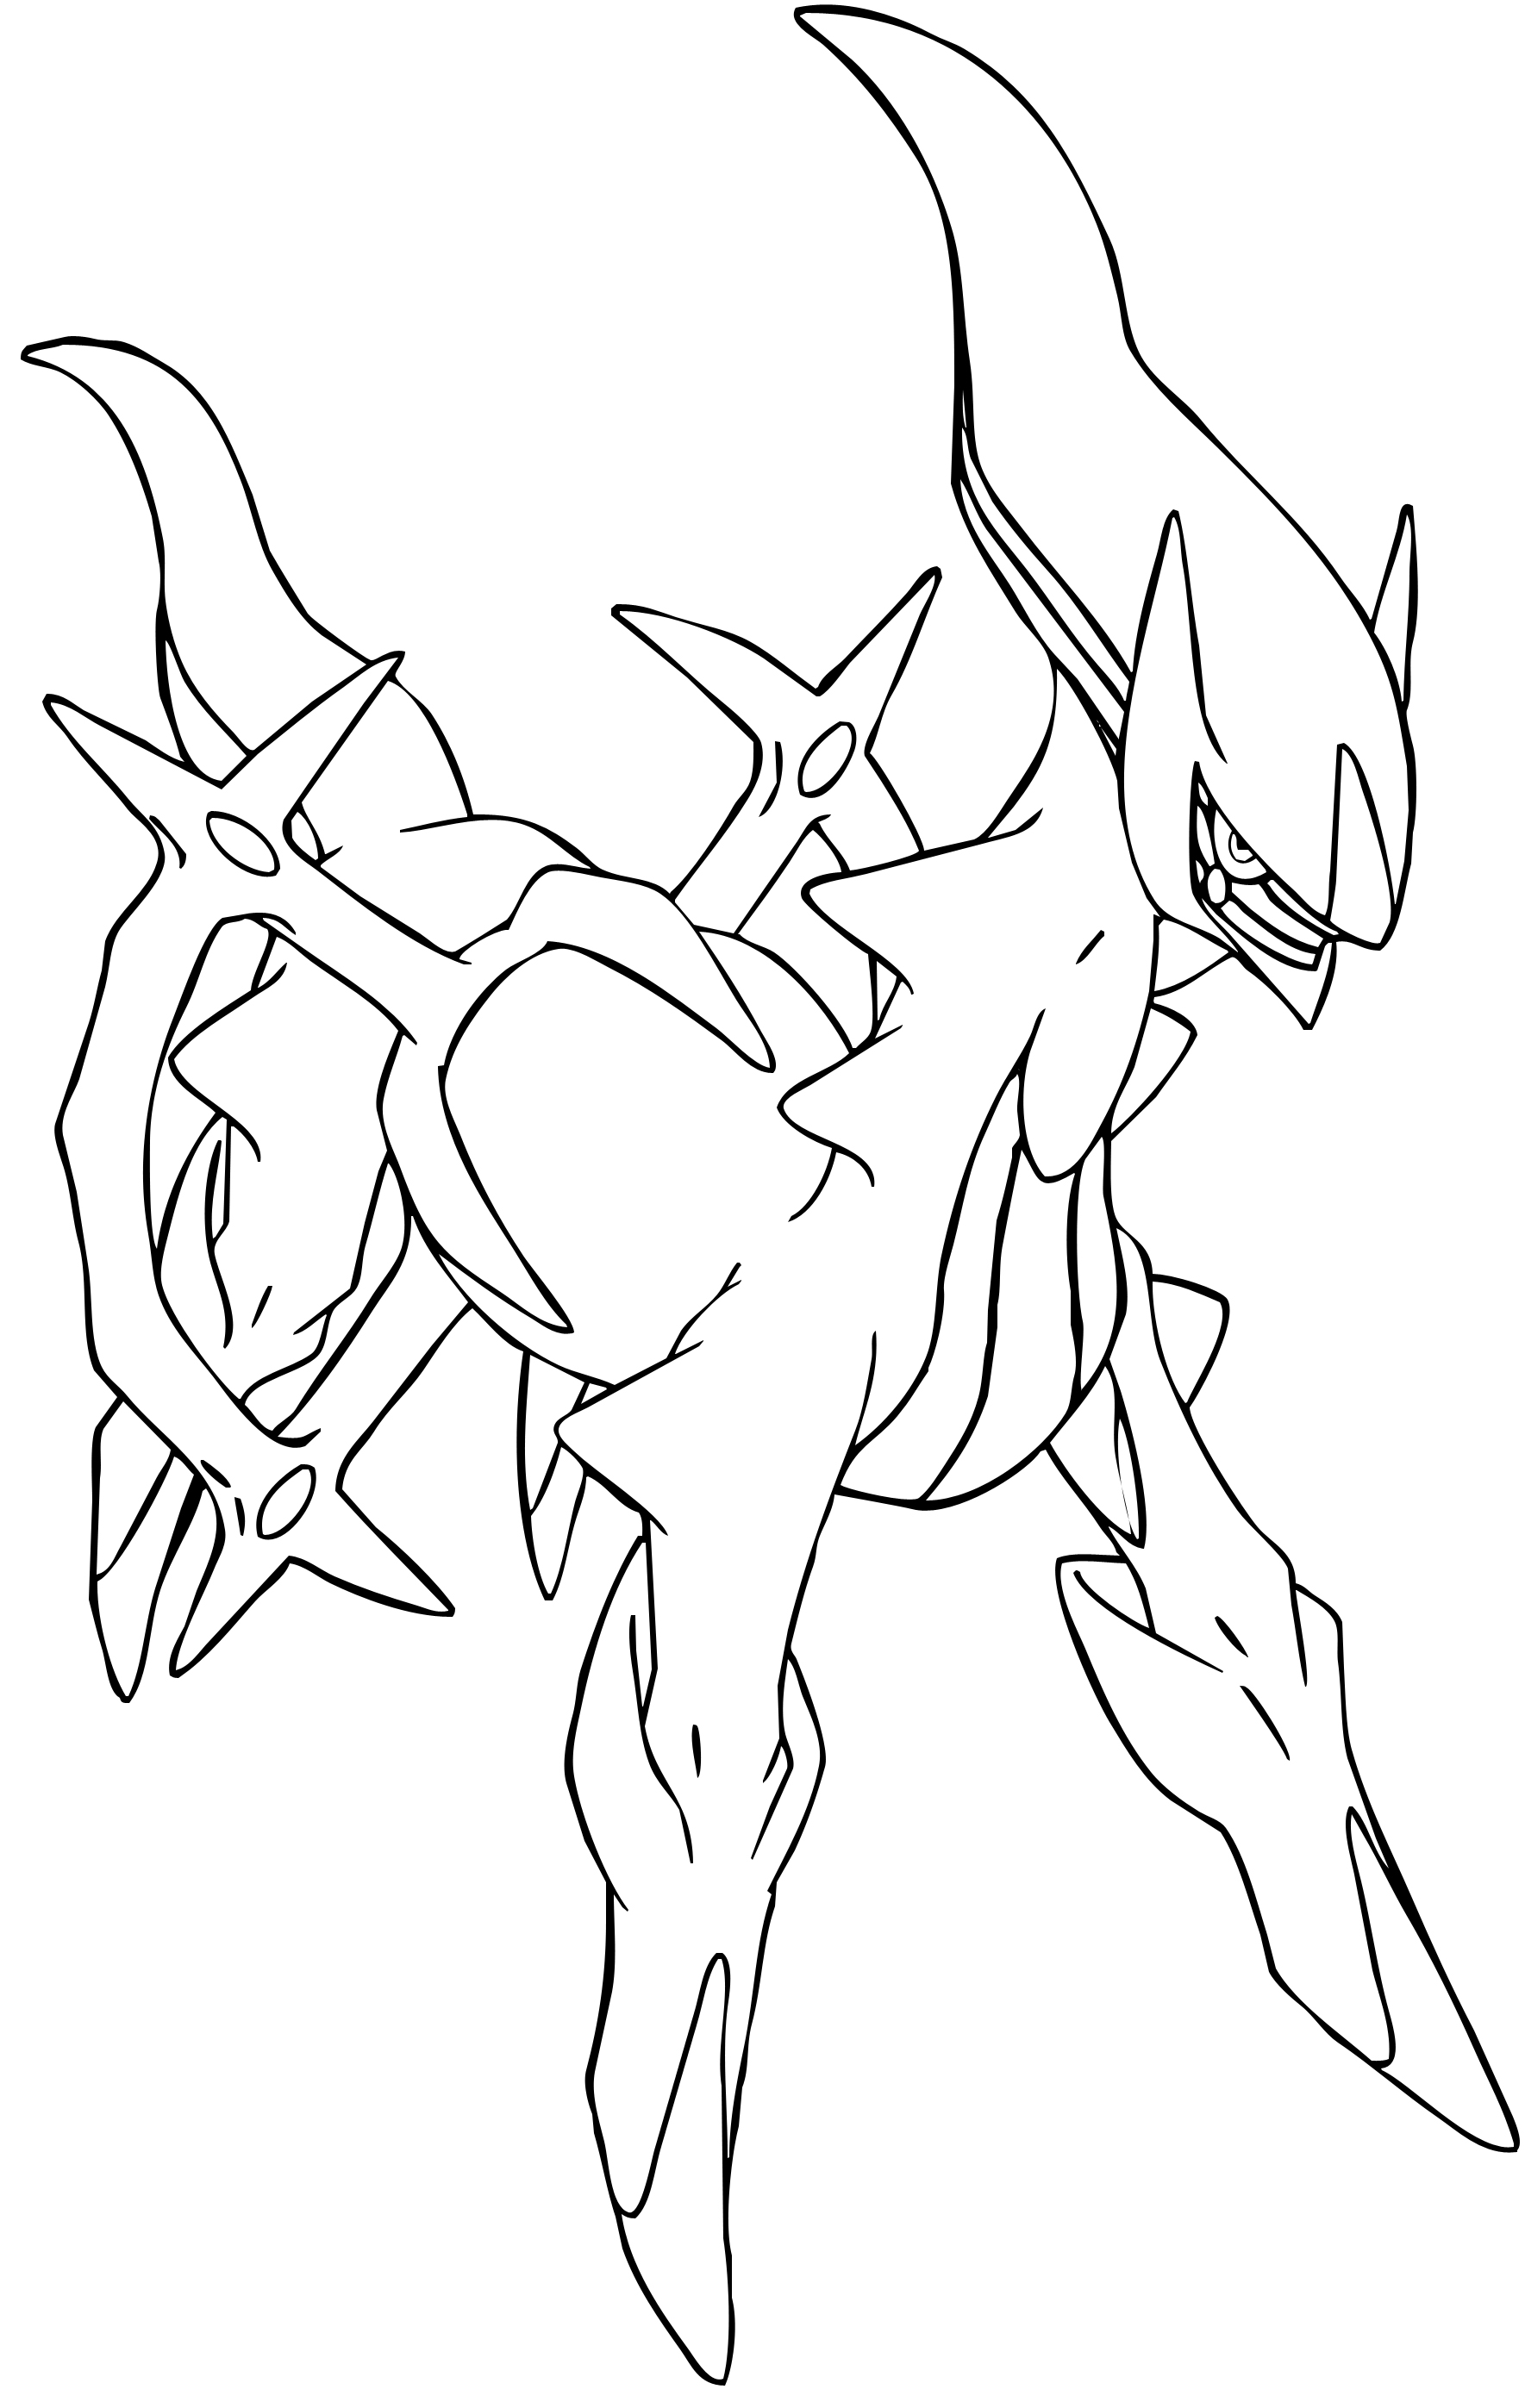 Disegno di Pokemon leggendario Arceus da colorare